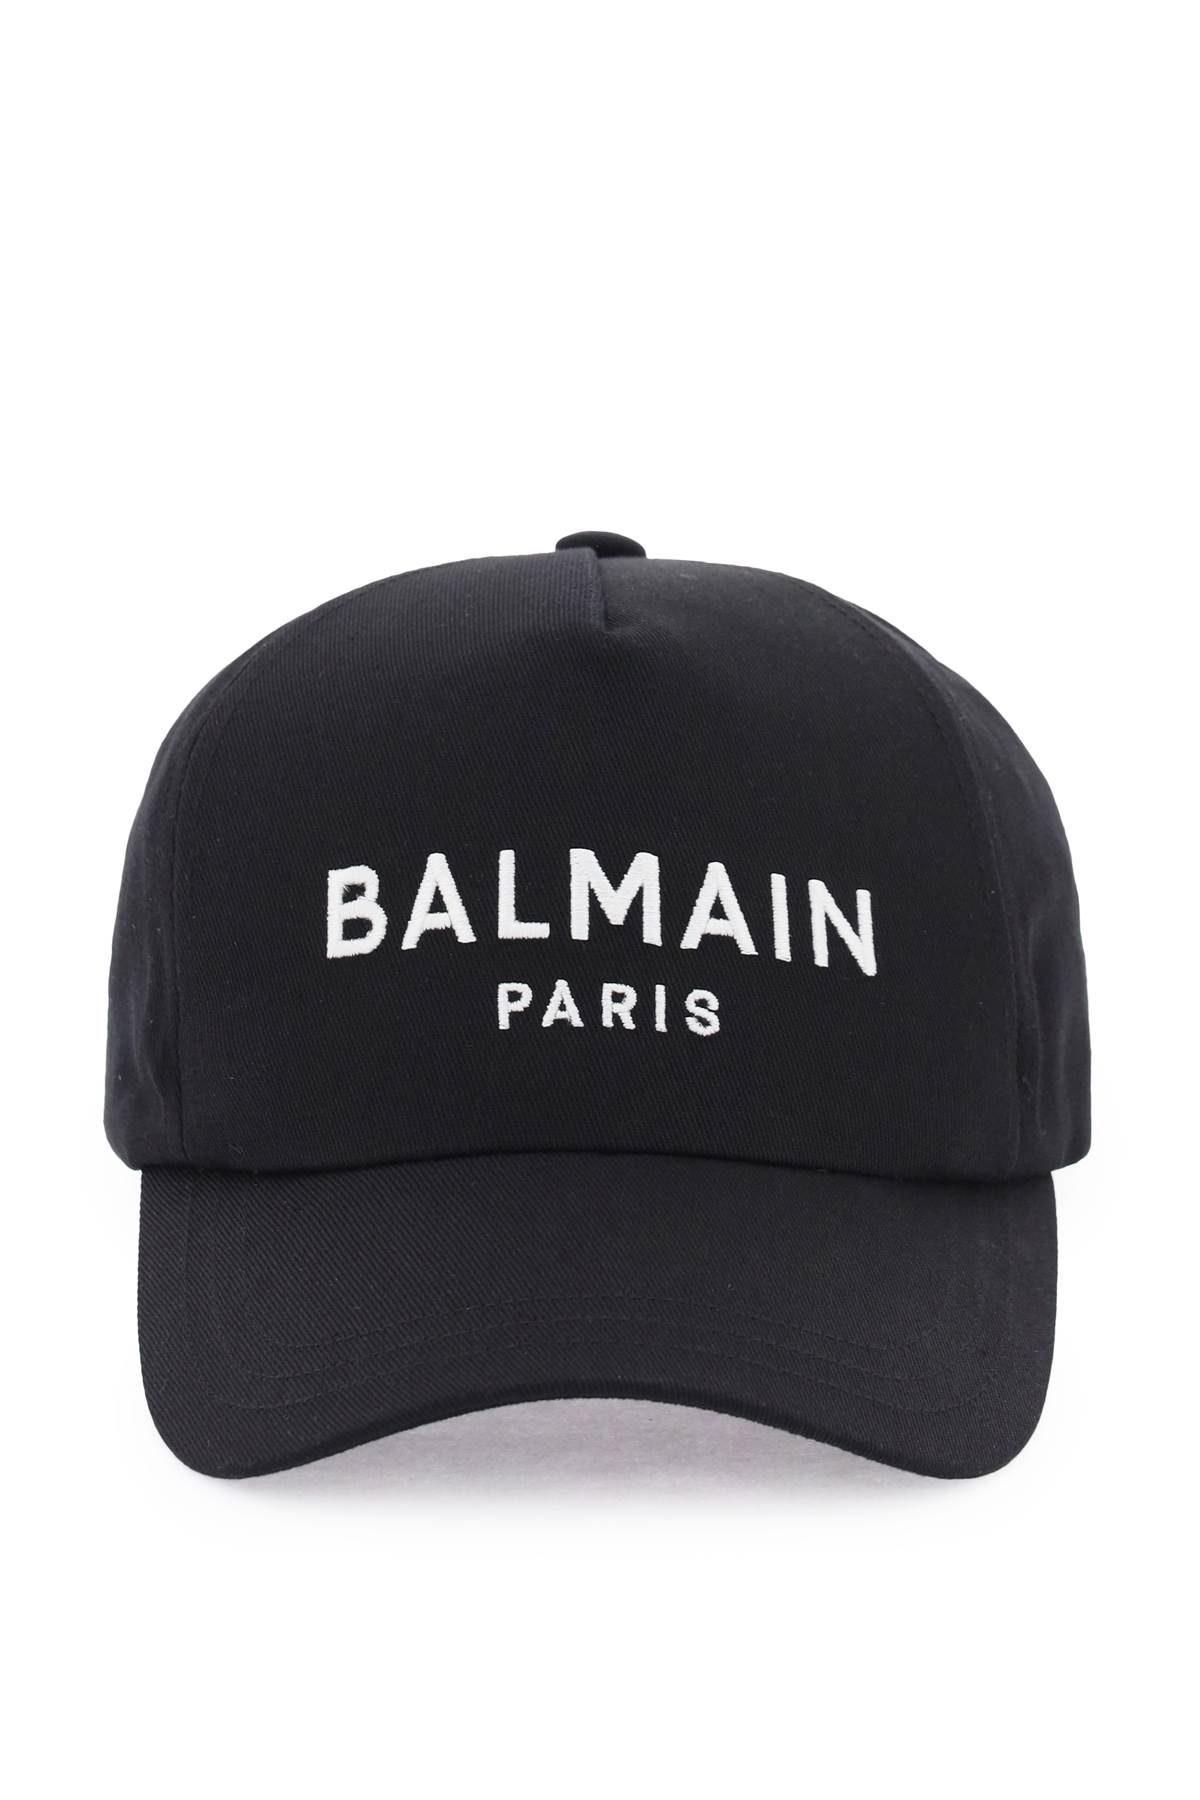 BALMAIN LOGO EMBROIDERY BASEBALL CAP